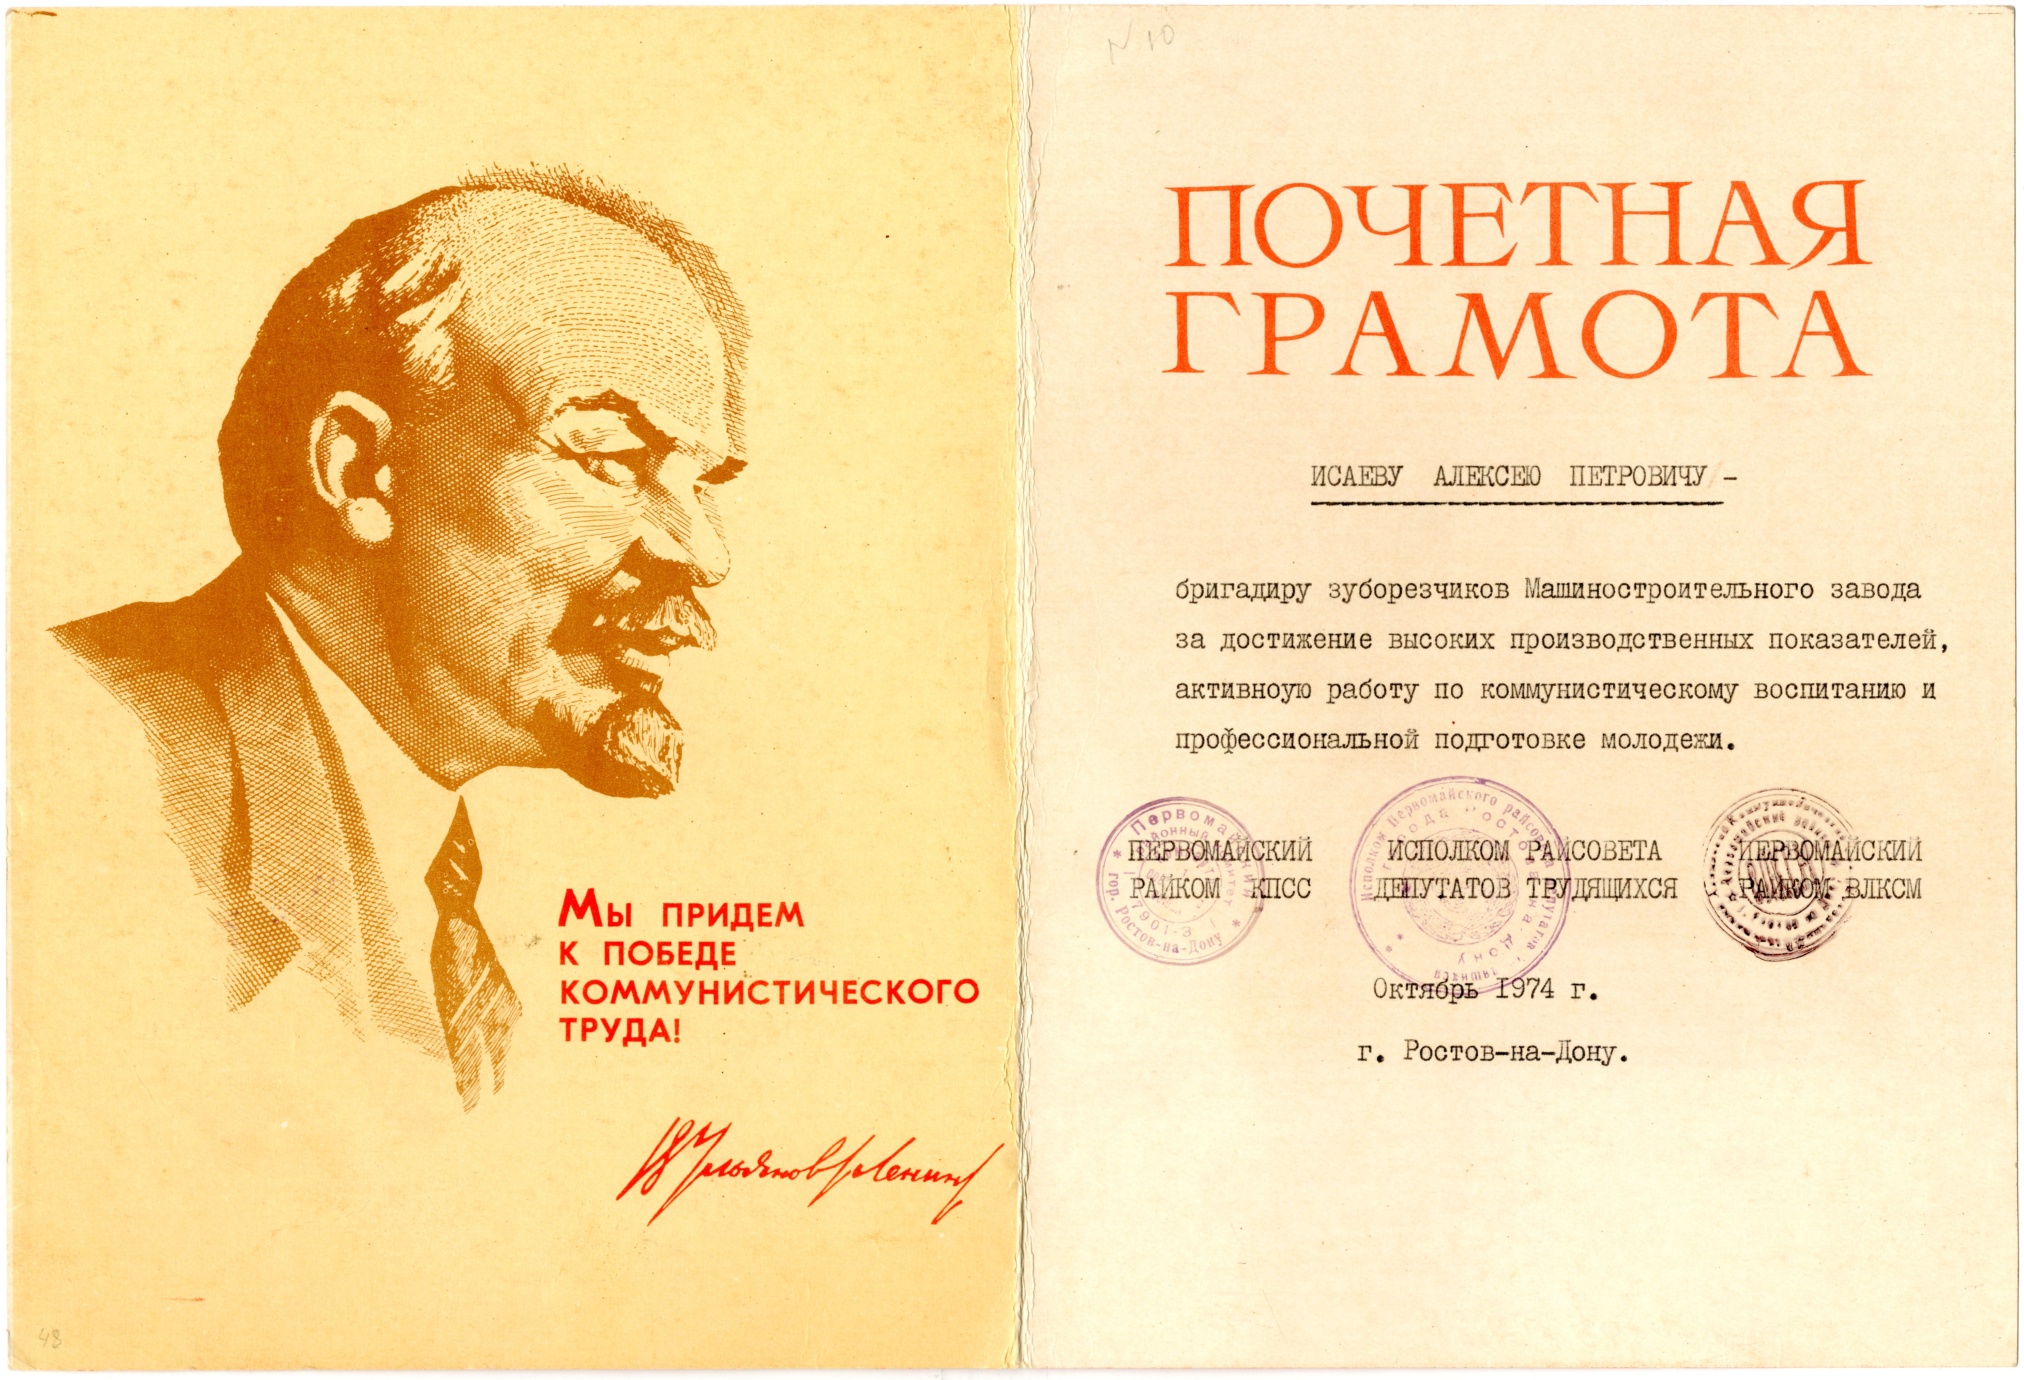 Почетная грамота А.П. Исаева за работу по коммунистическому воспитанию молодёжи. 1974 г.